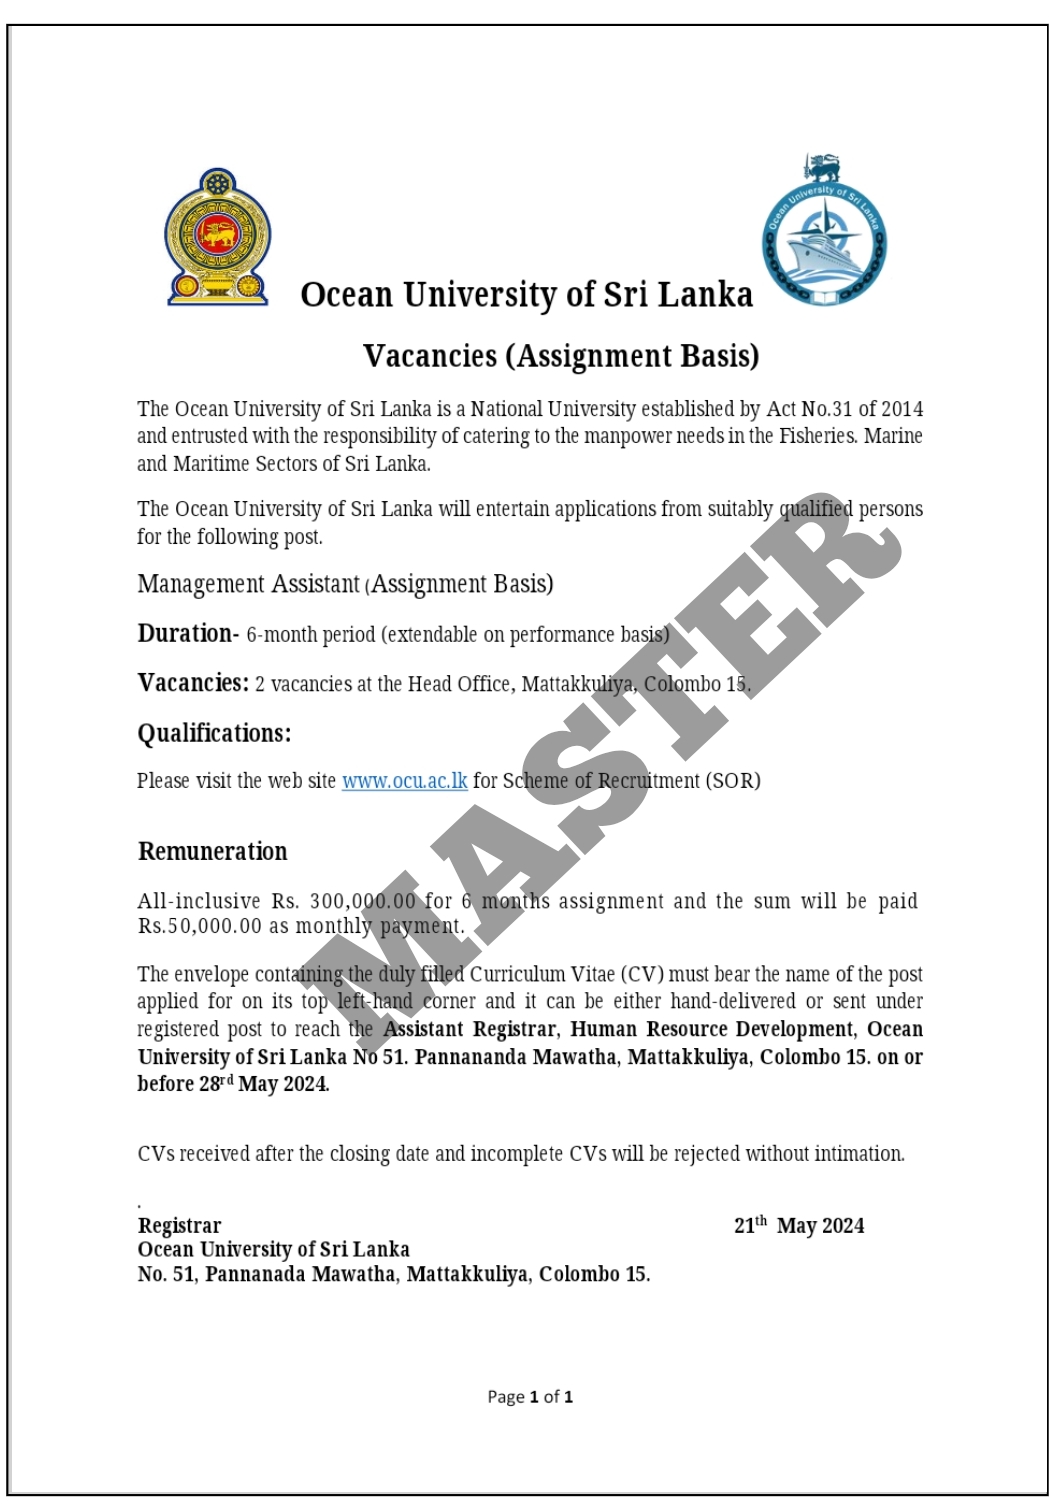 Management Assistant - Ocean University of Sri Lanka